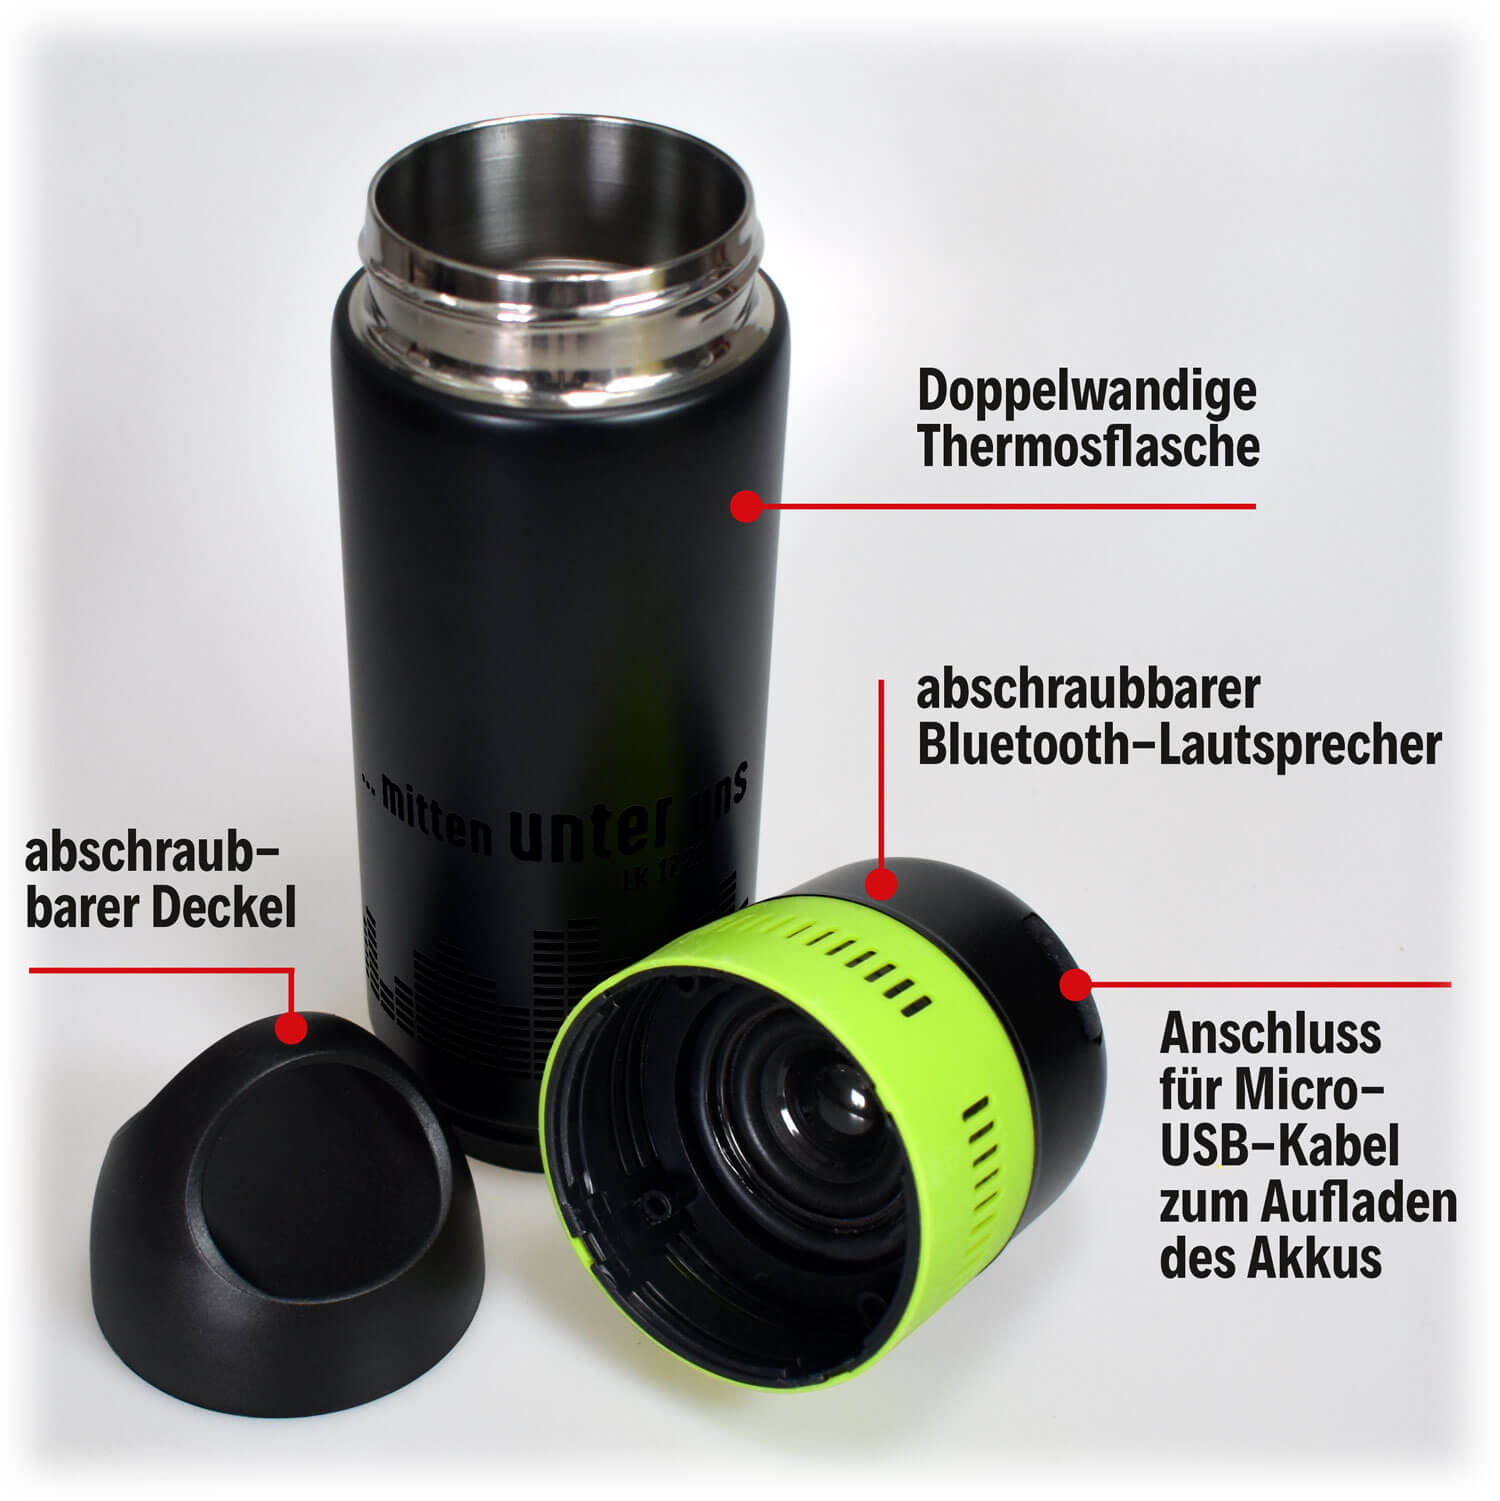 Thermosflasche - Mitten unter uns & Bluetooth-Lautsprecher 